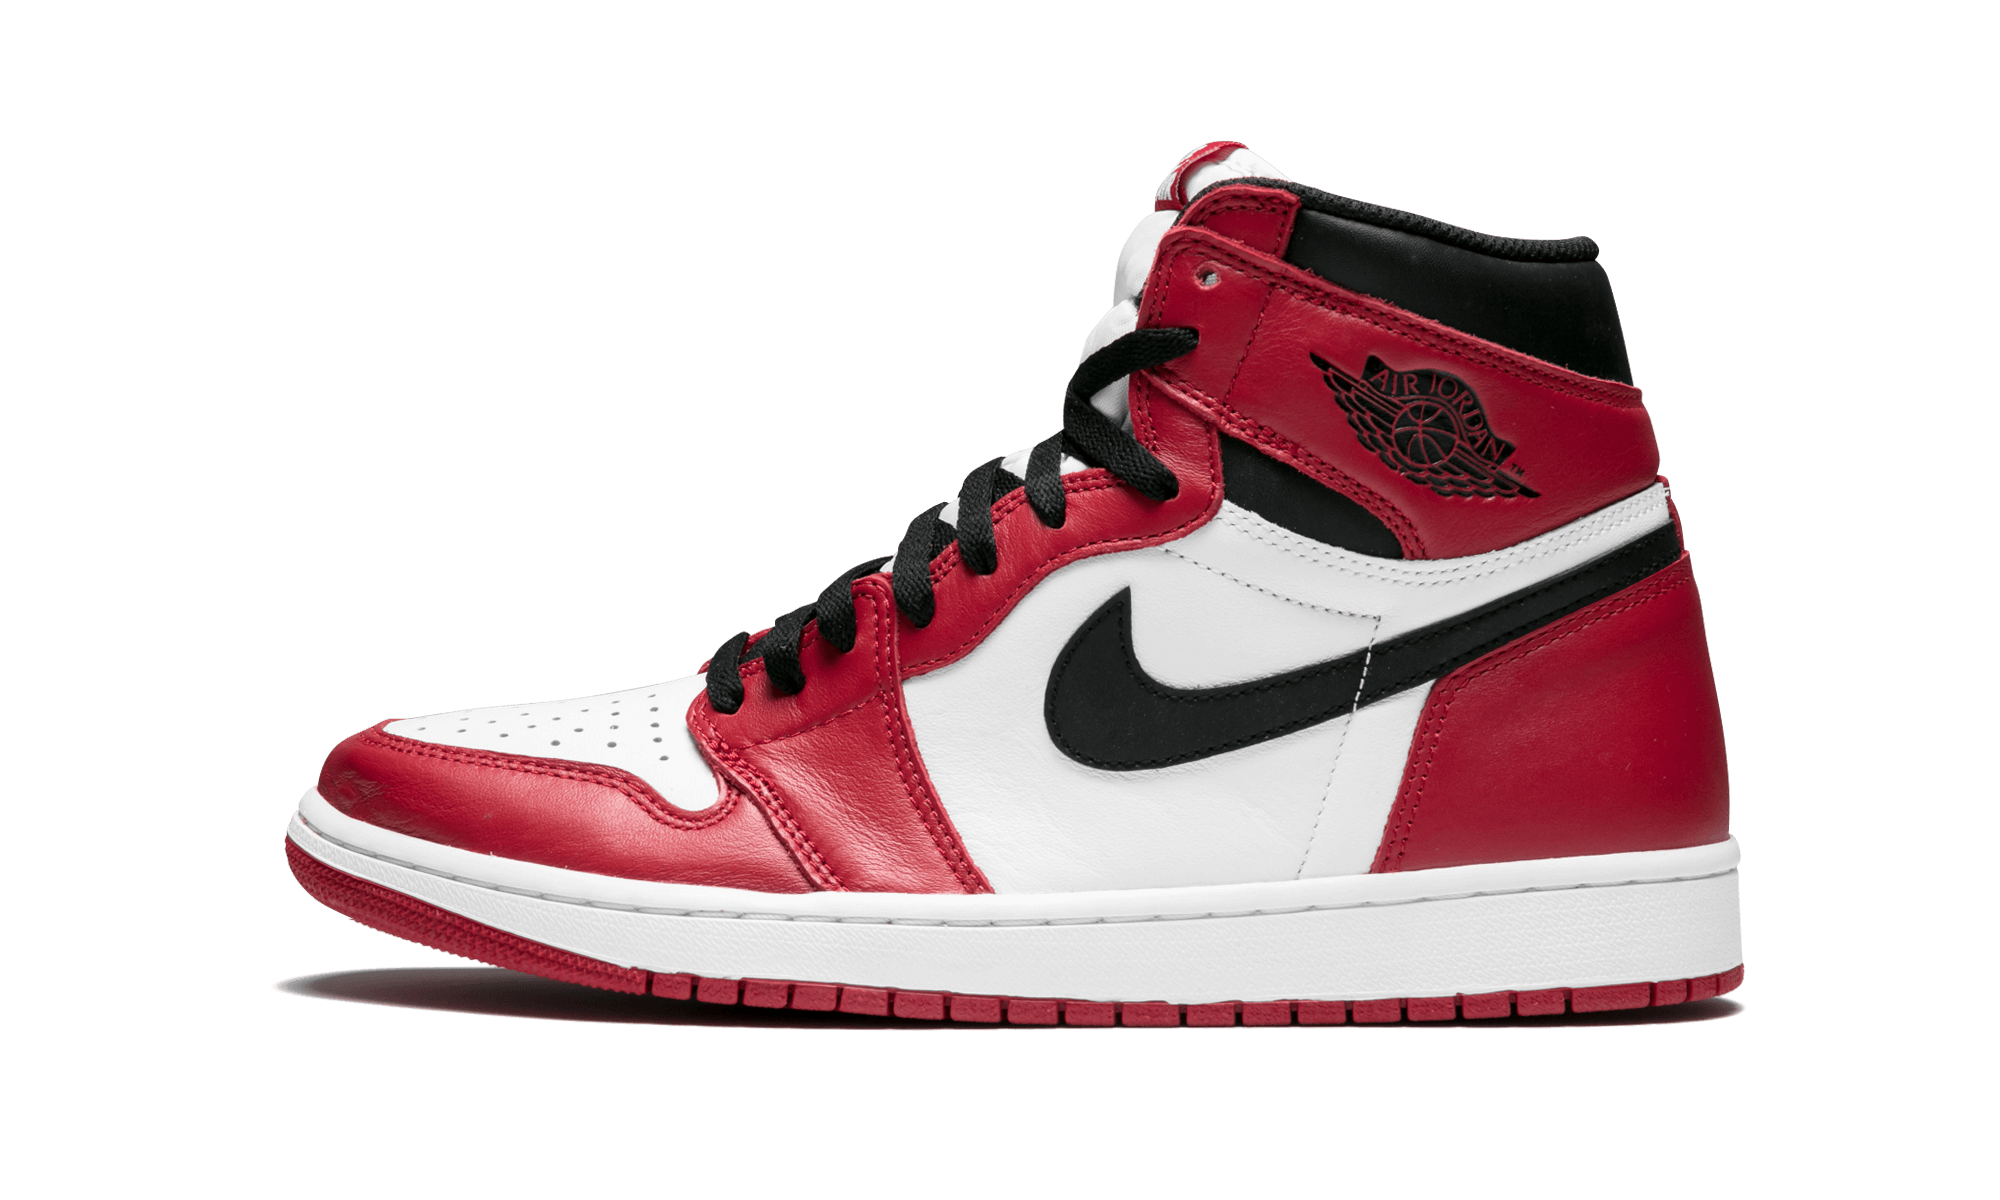 Air Jordans 1 Retro High OG “Chicago” 555088-101